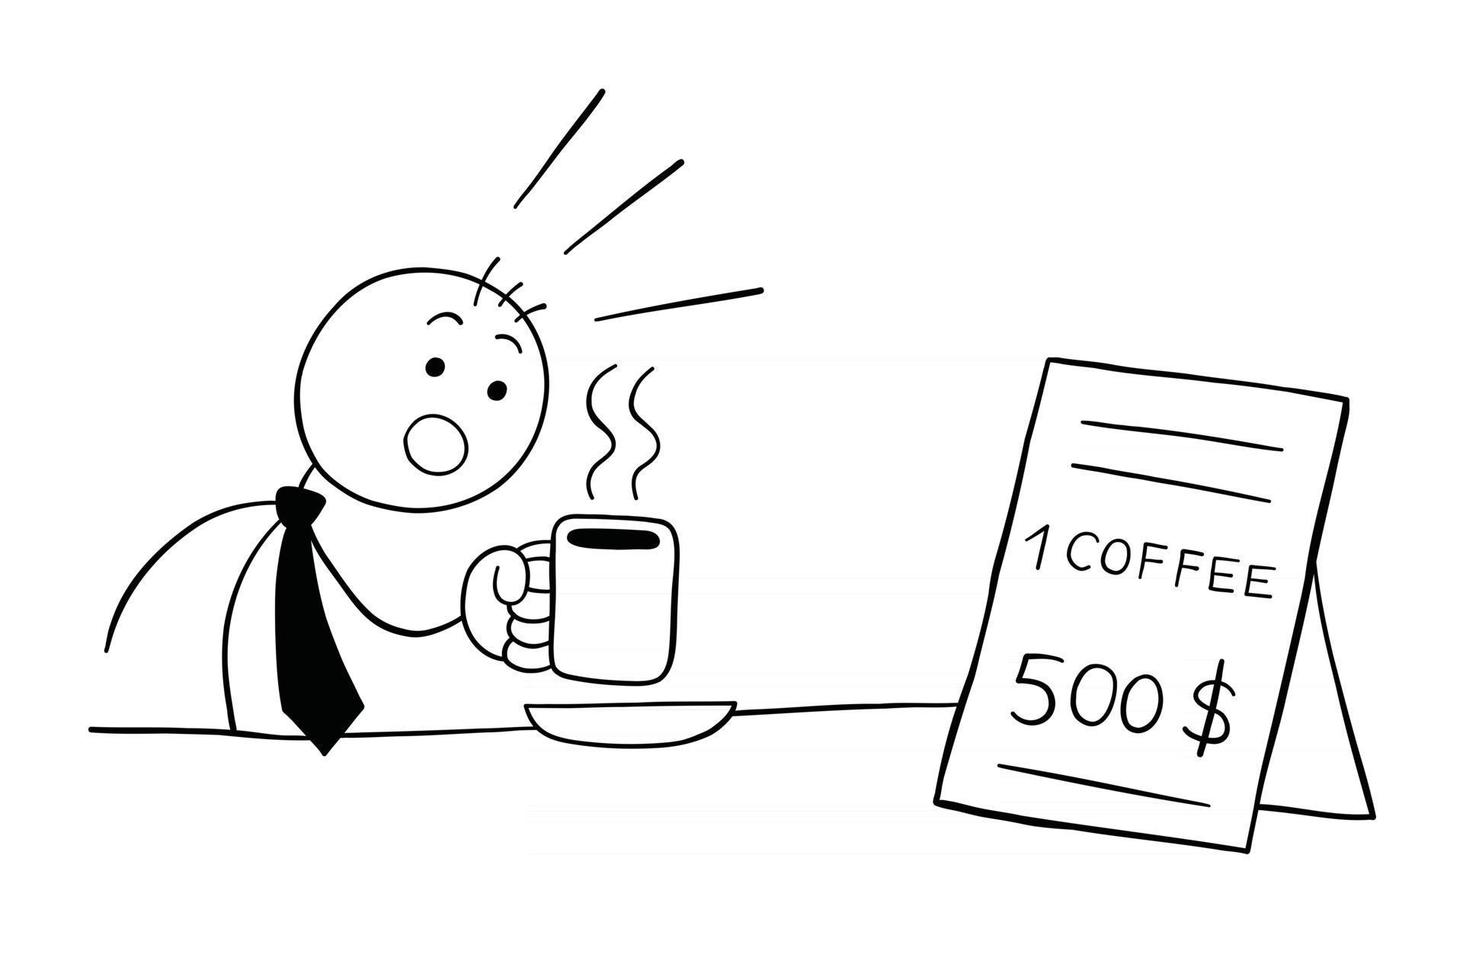 il personaggio dell'uomo d'affari stickman beve caffè ed è scioccato nel vedere il prezzo costoso dell'illustrazione del fumetto vettoriale del caffè coffee